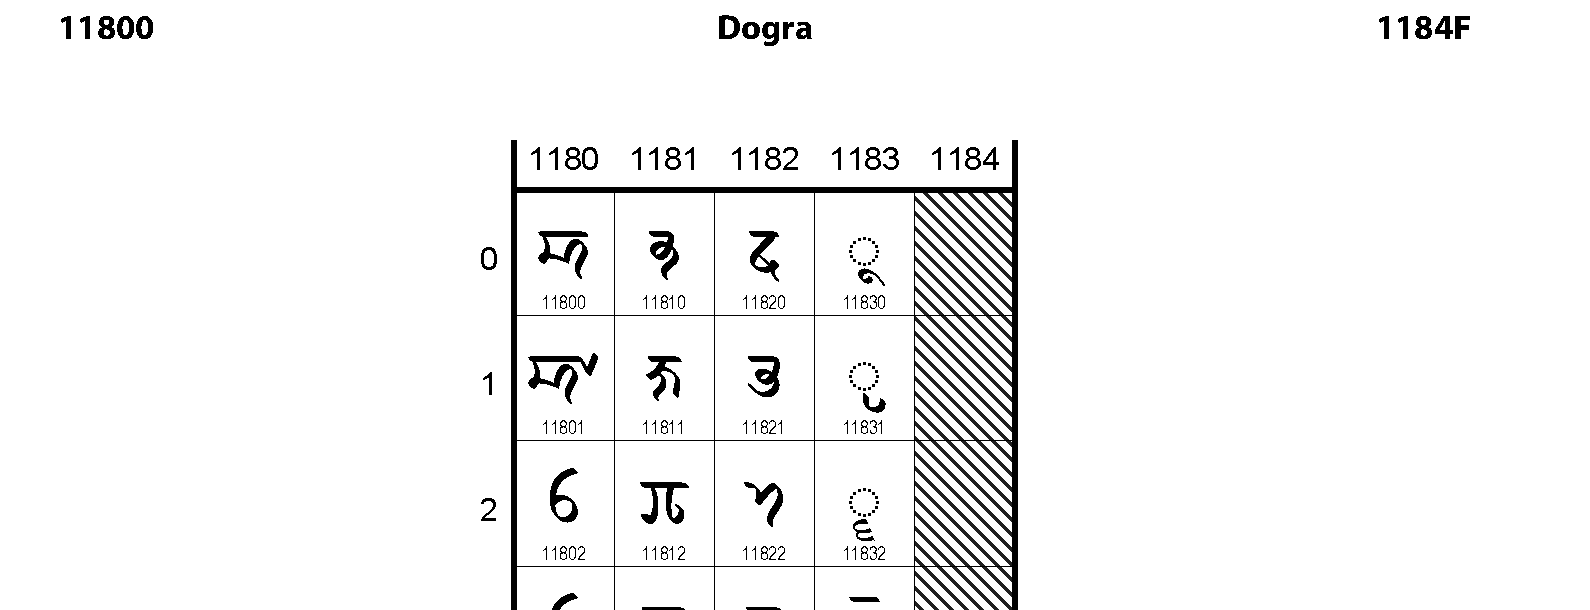 Unicode - Dogra